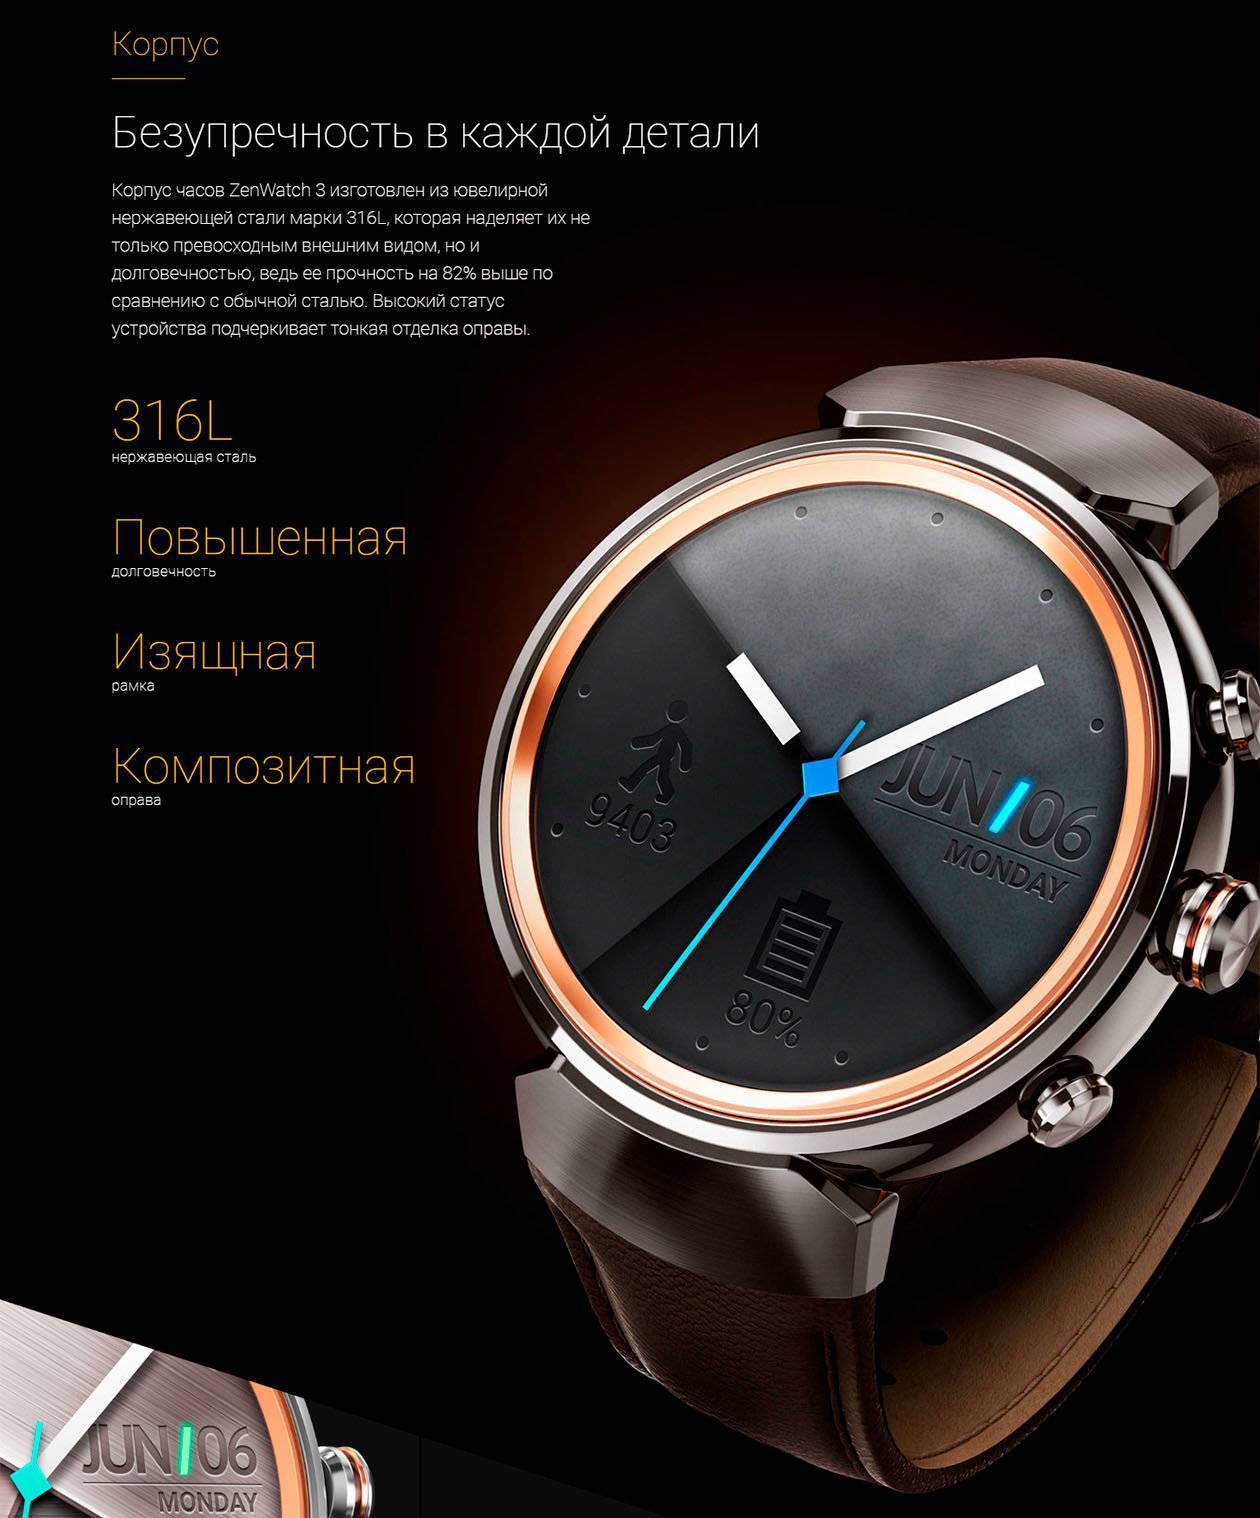 Смарт часы asus zenwatch 3: характеристики, внешний вид, управление, сравнение с предыдущей моделью - kupihome.ru